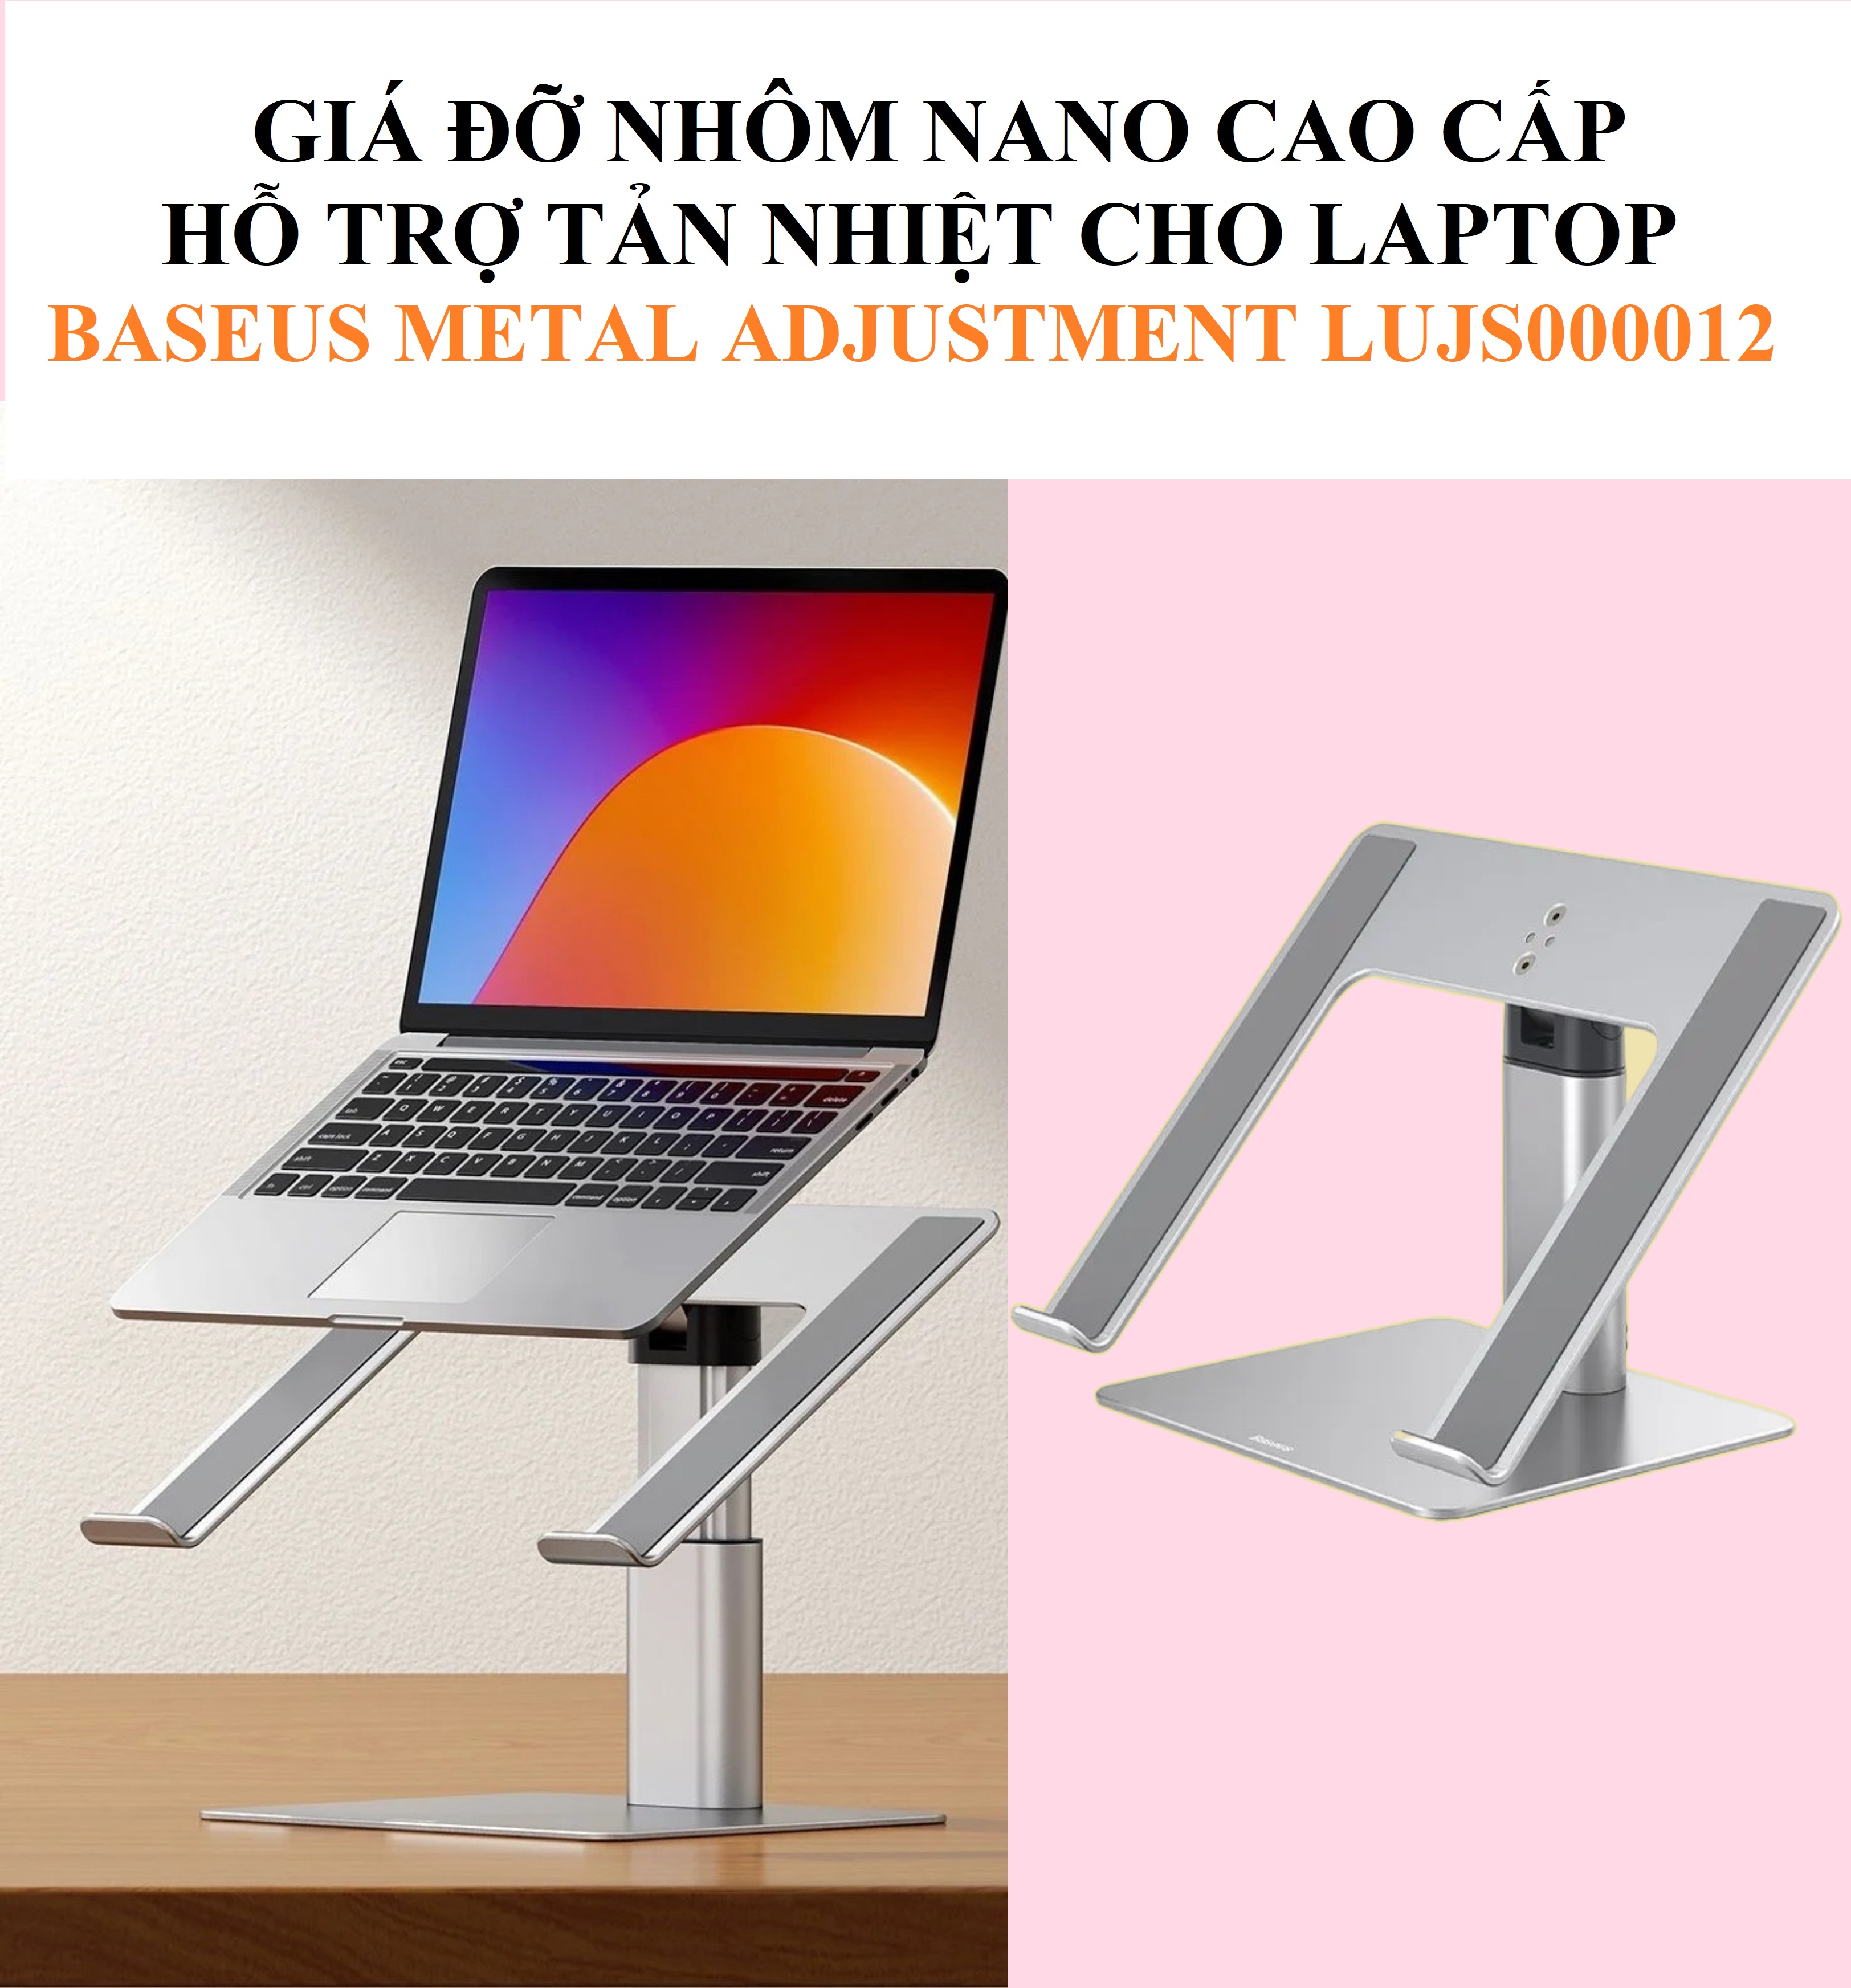 Giá đỡ laptop nhôm nano cao cấp hỗ trợ tản nhiệt đổi chiều cao Baseus Metal Adjustment LUJS000012 _ hàng chính hãng